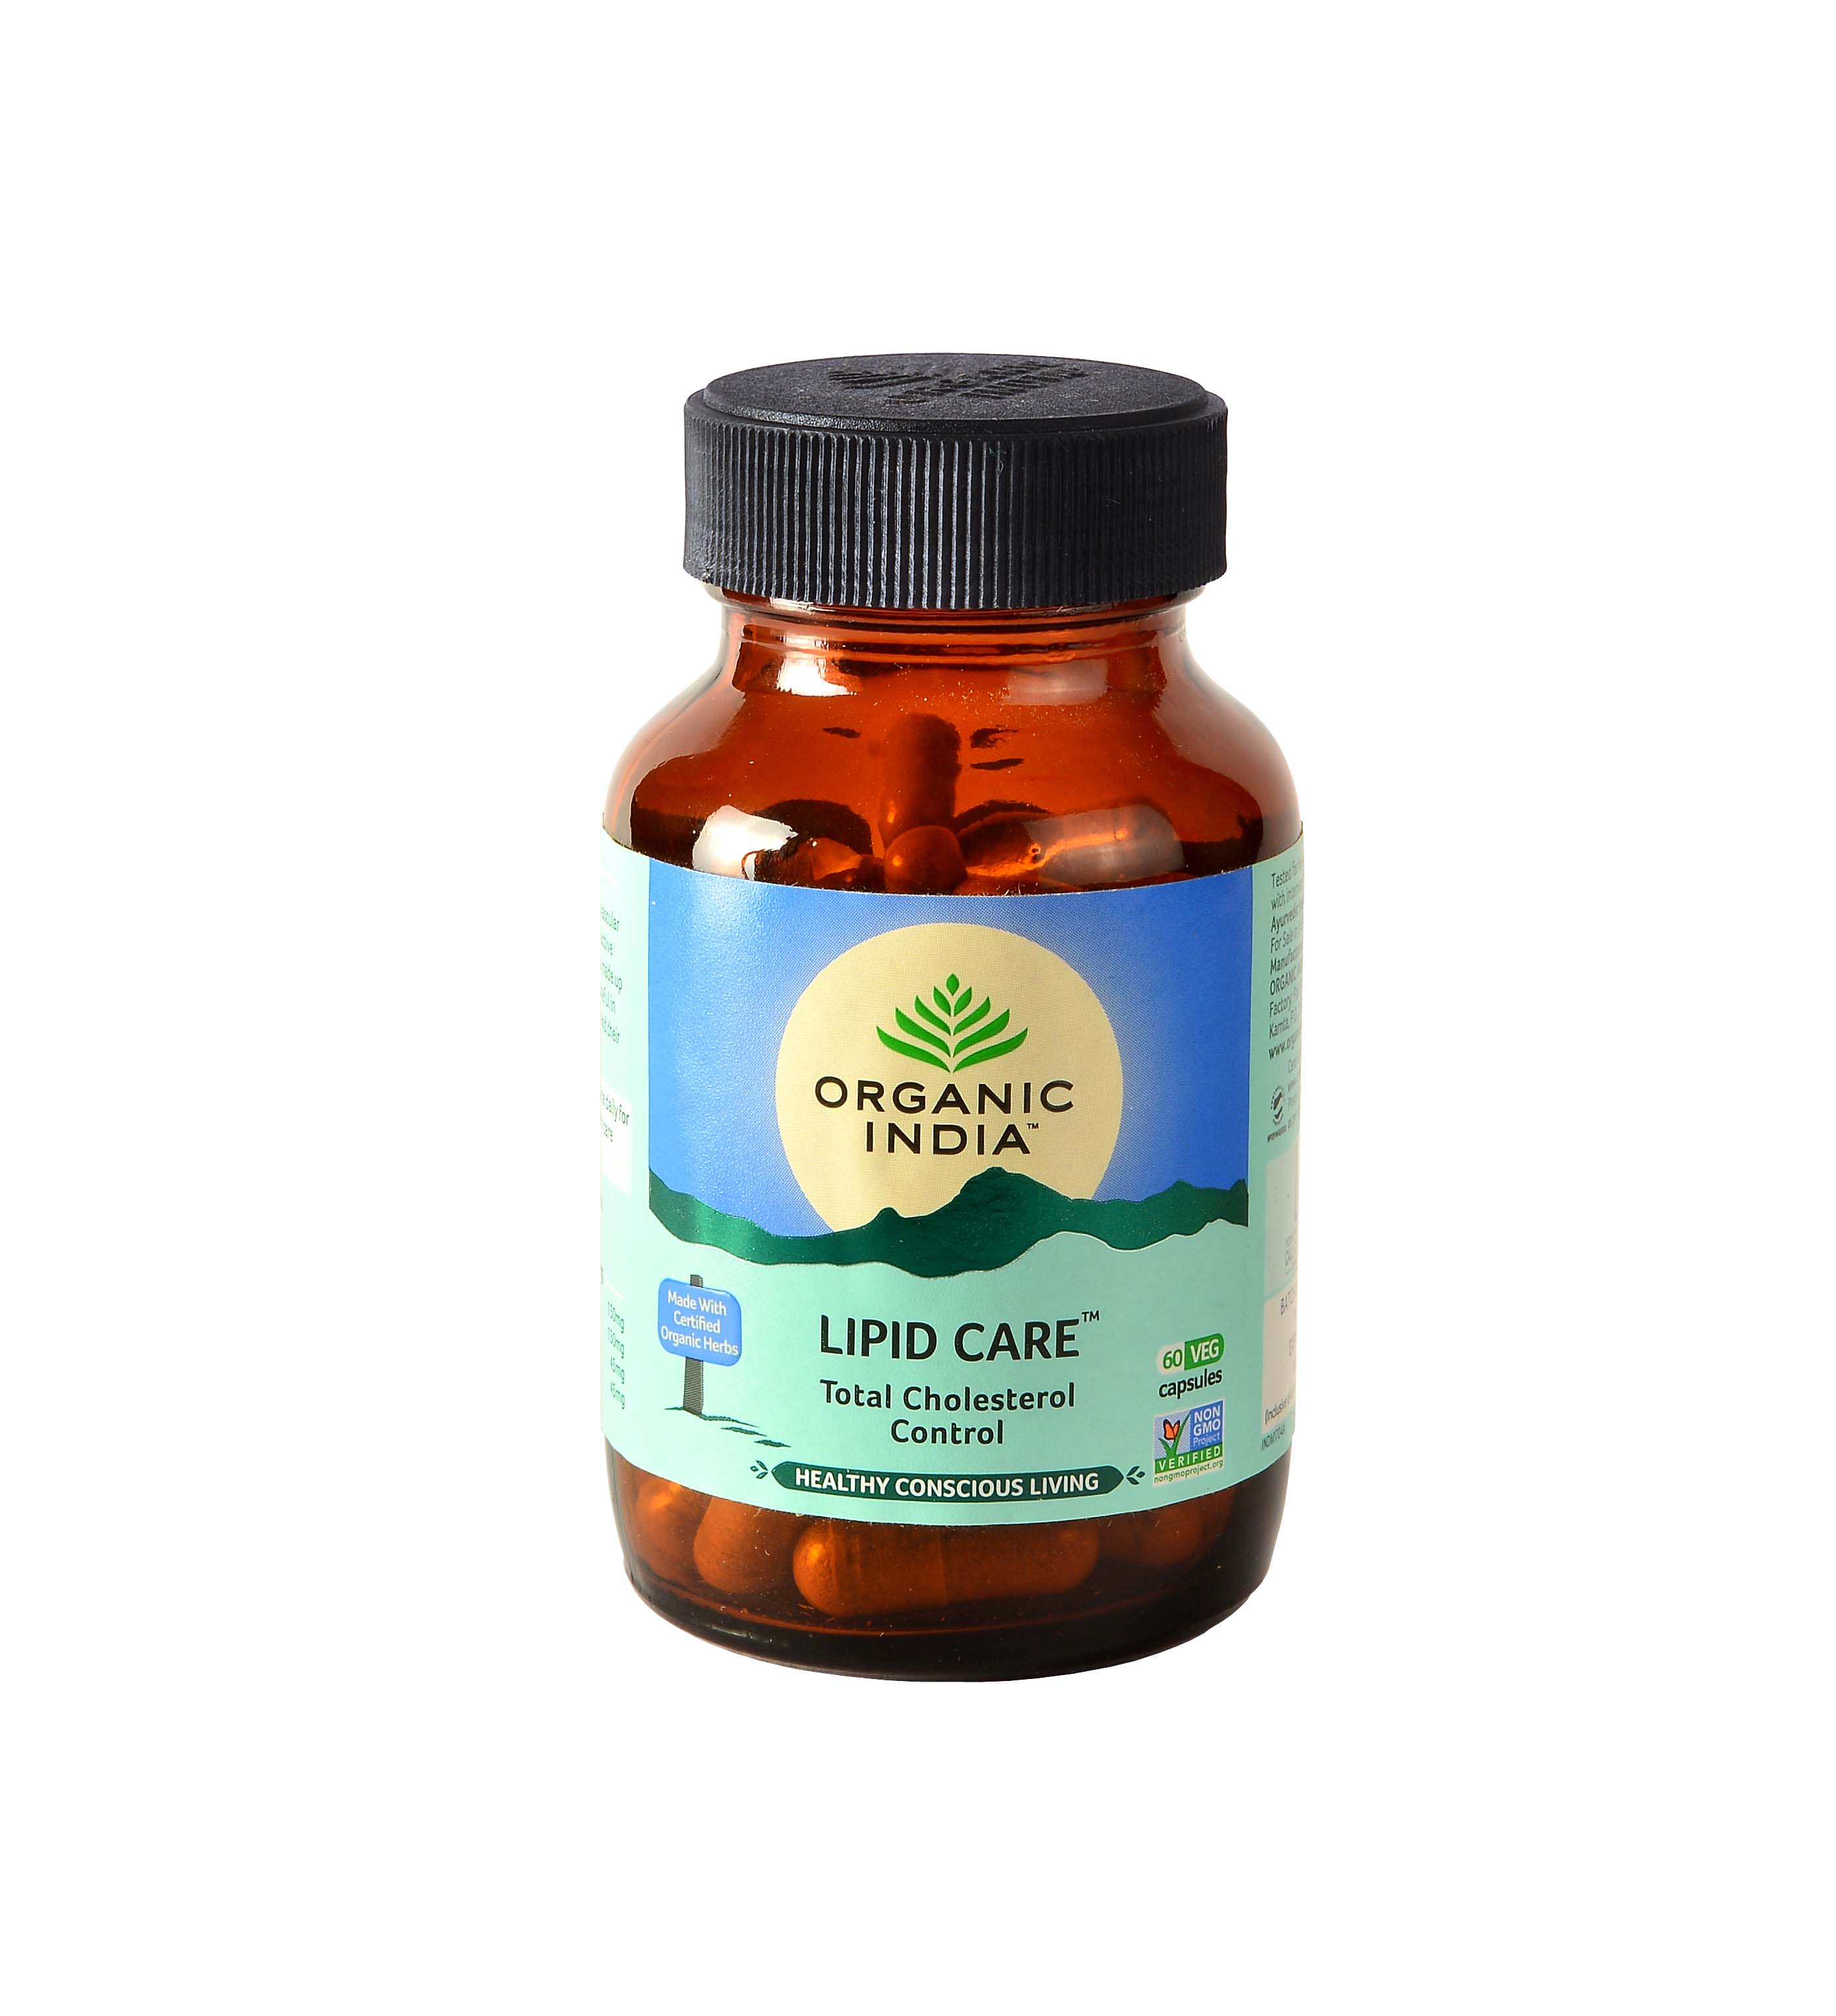 Organic India Lipid Care Capsule